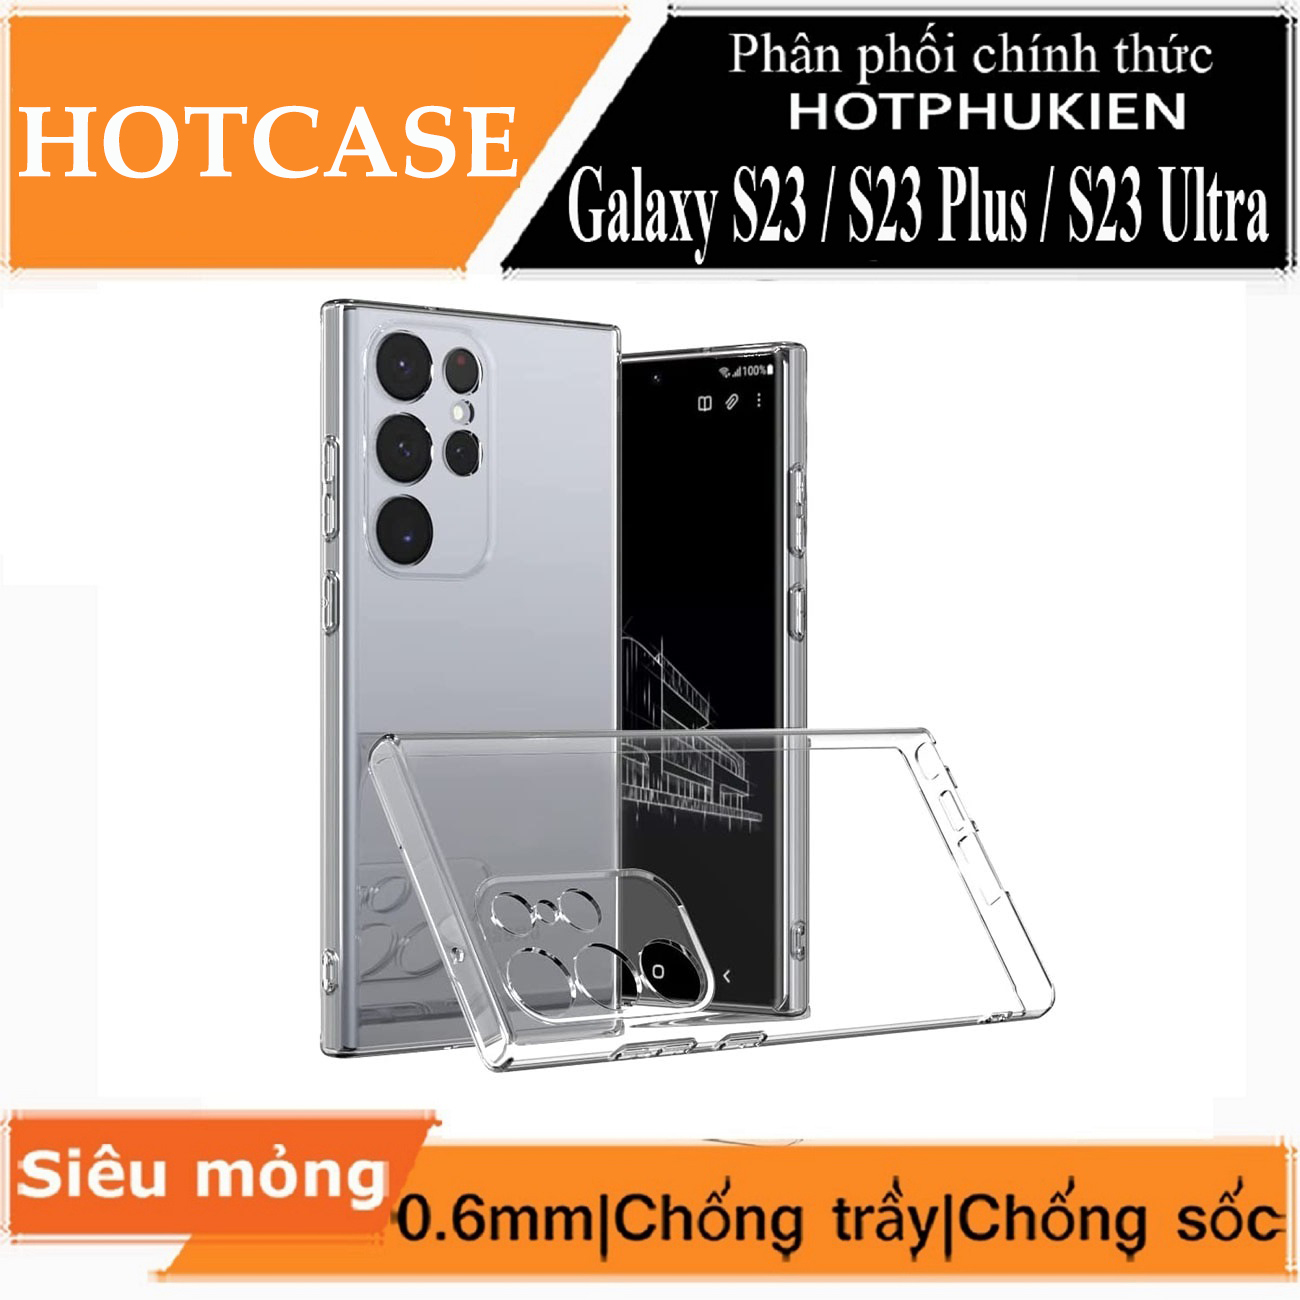 Ốp lưng silicon cho Samsung Galaxy S23 hiệu HOTCASE - siêu mỏng 0.6mm, thiết kế trong suốt, chống trầy xước